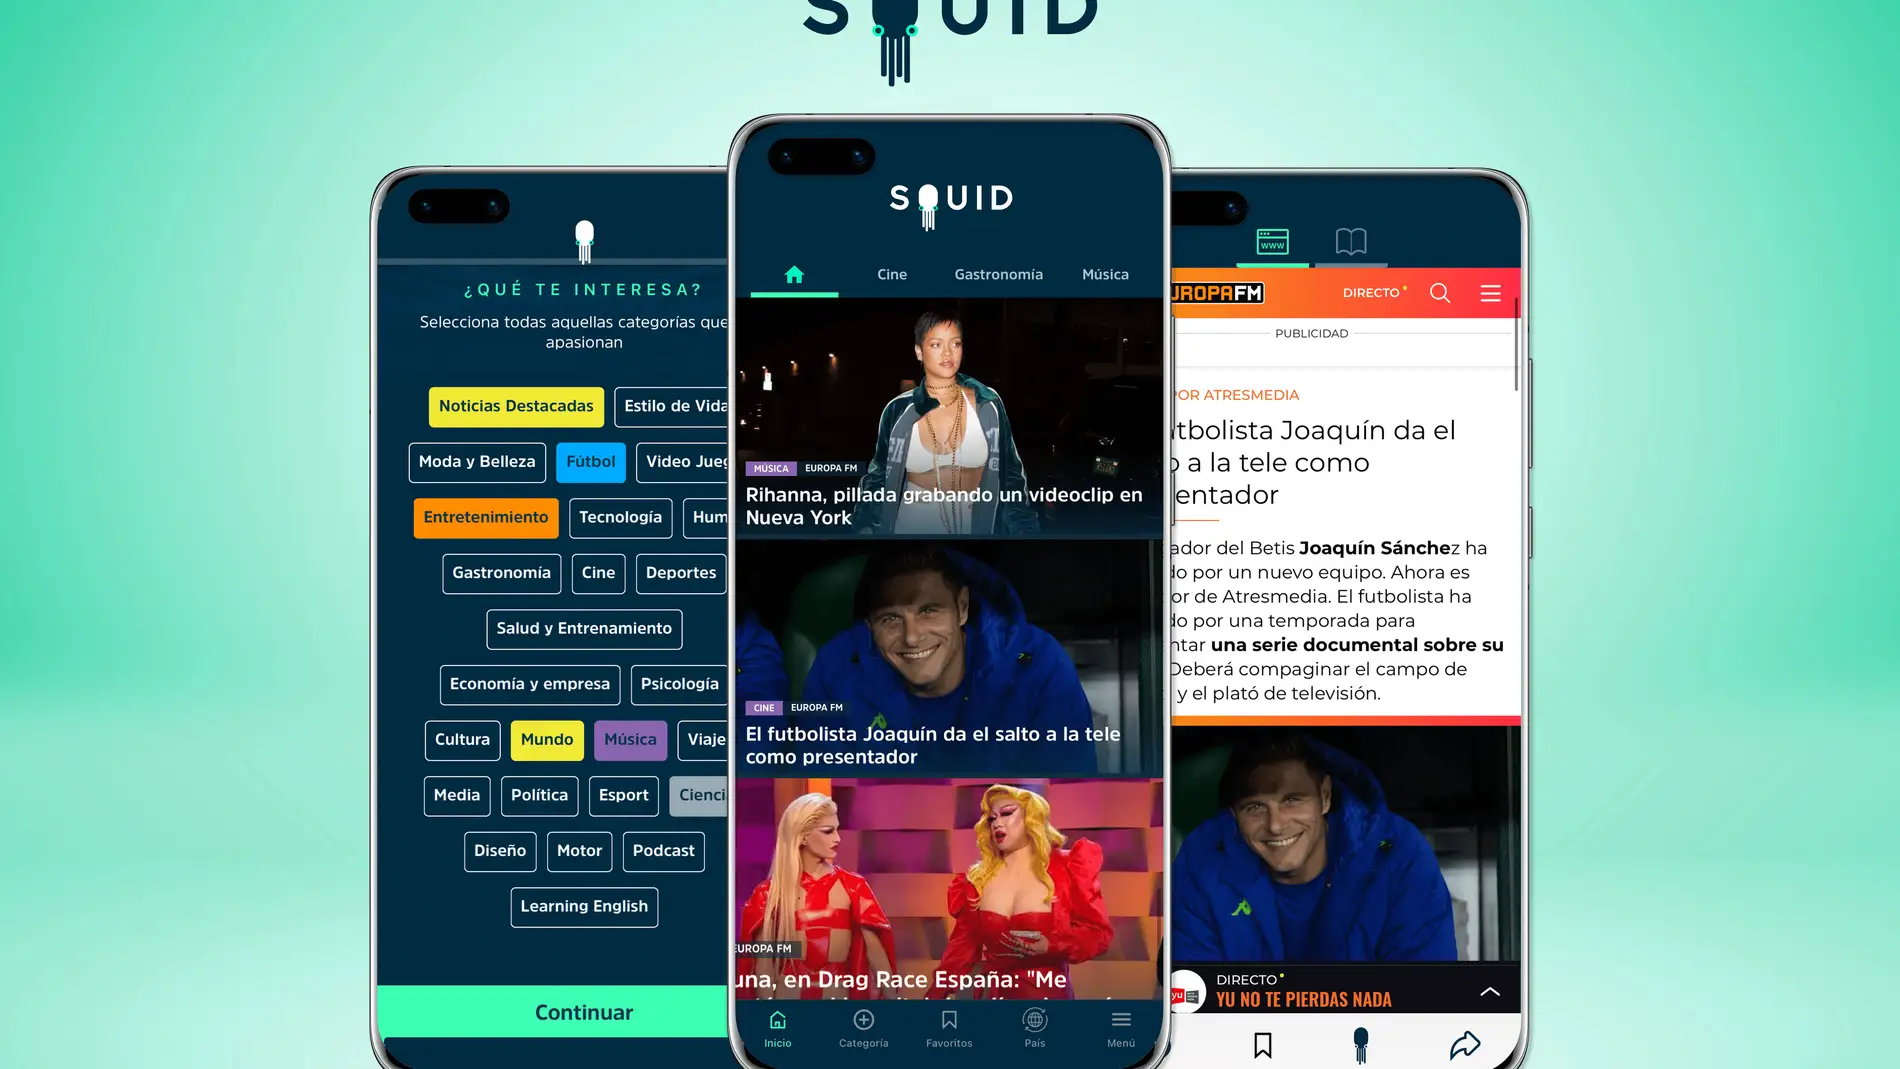 Cómo funciona SQUID App